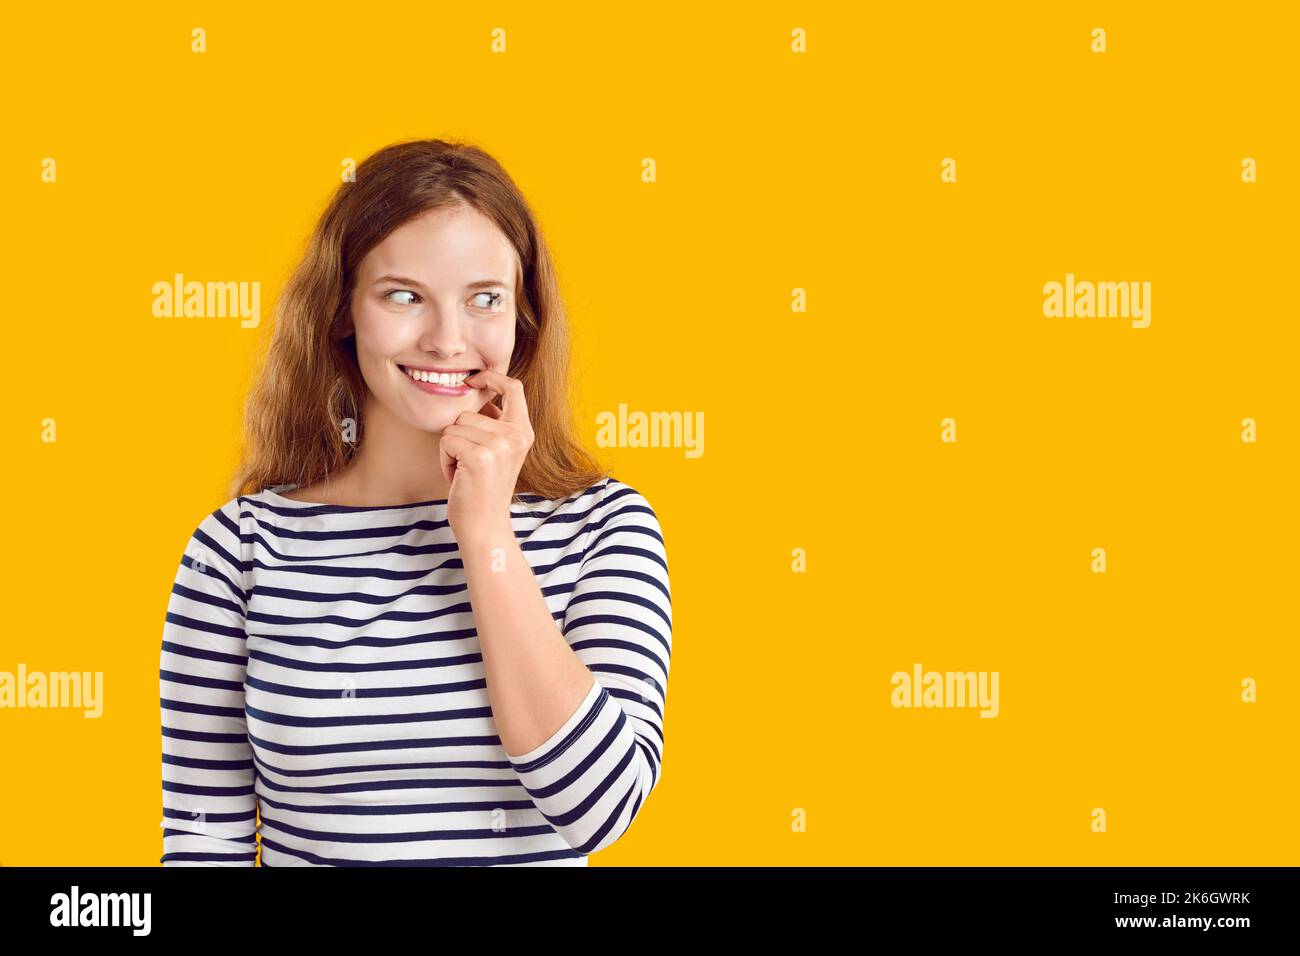 Une femme avec un sourire étrange et drôle sur le visage regarde latéralement sur fond jaune d'espace de copie Banque D'Images